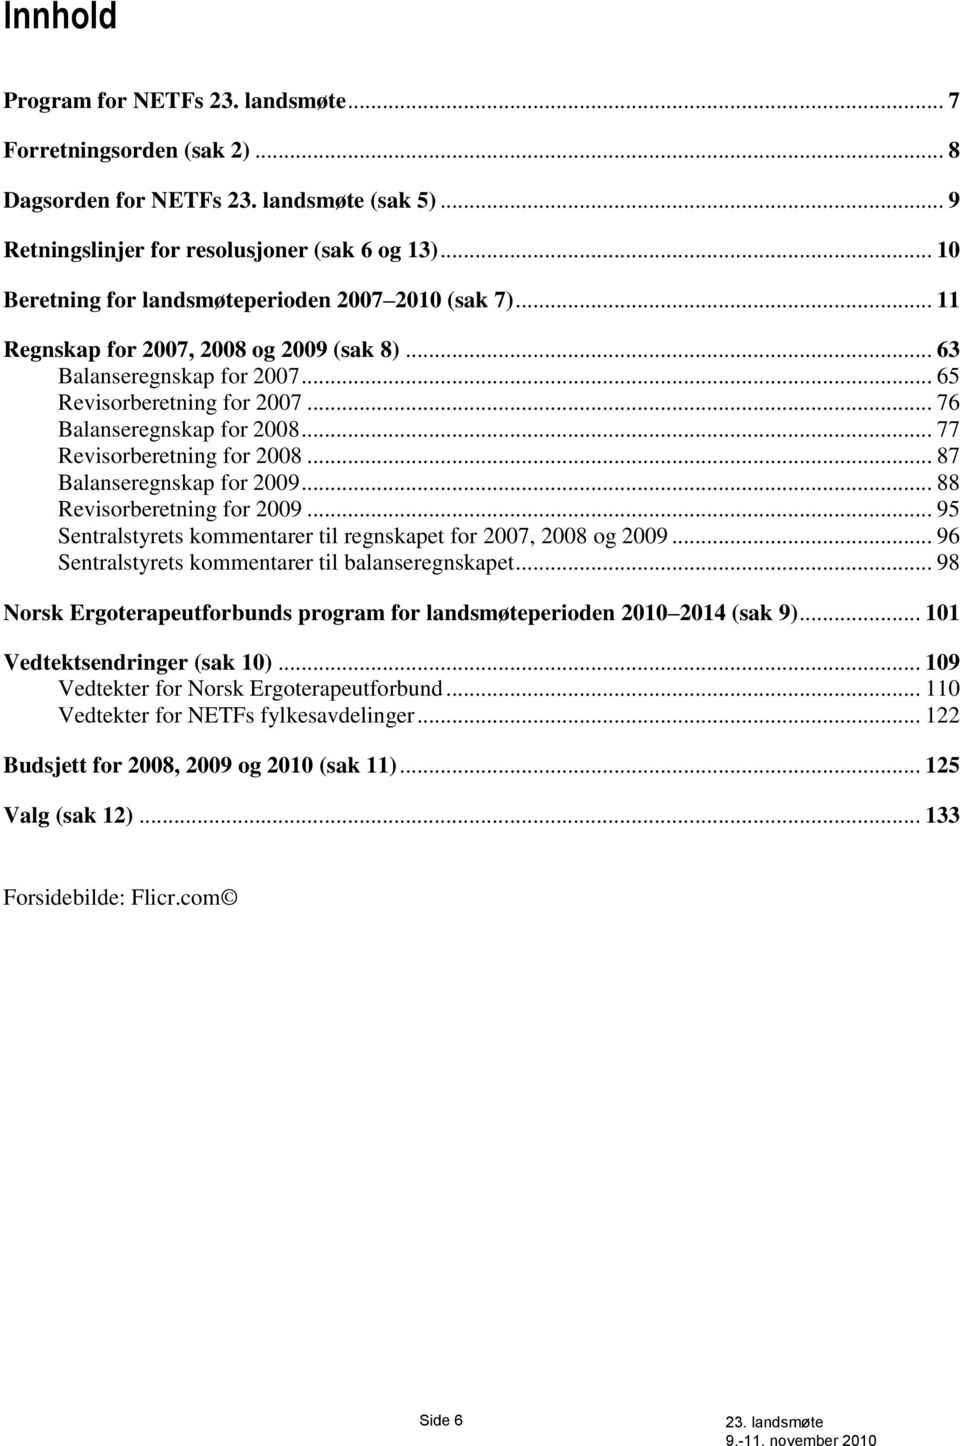 .. 87 Balanseregnskap for 2009... 88 Revisorberetning for 2009... 95 Sentralstyrets kommentarer til regnskapet for 2007, 2008 og 2009... 96 Sentralstyrets kommentarer til balanseregnskapet.